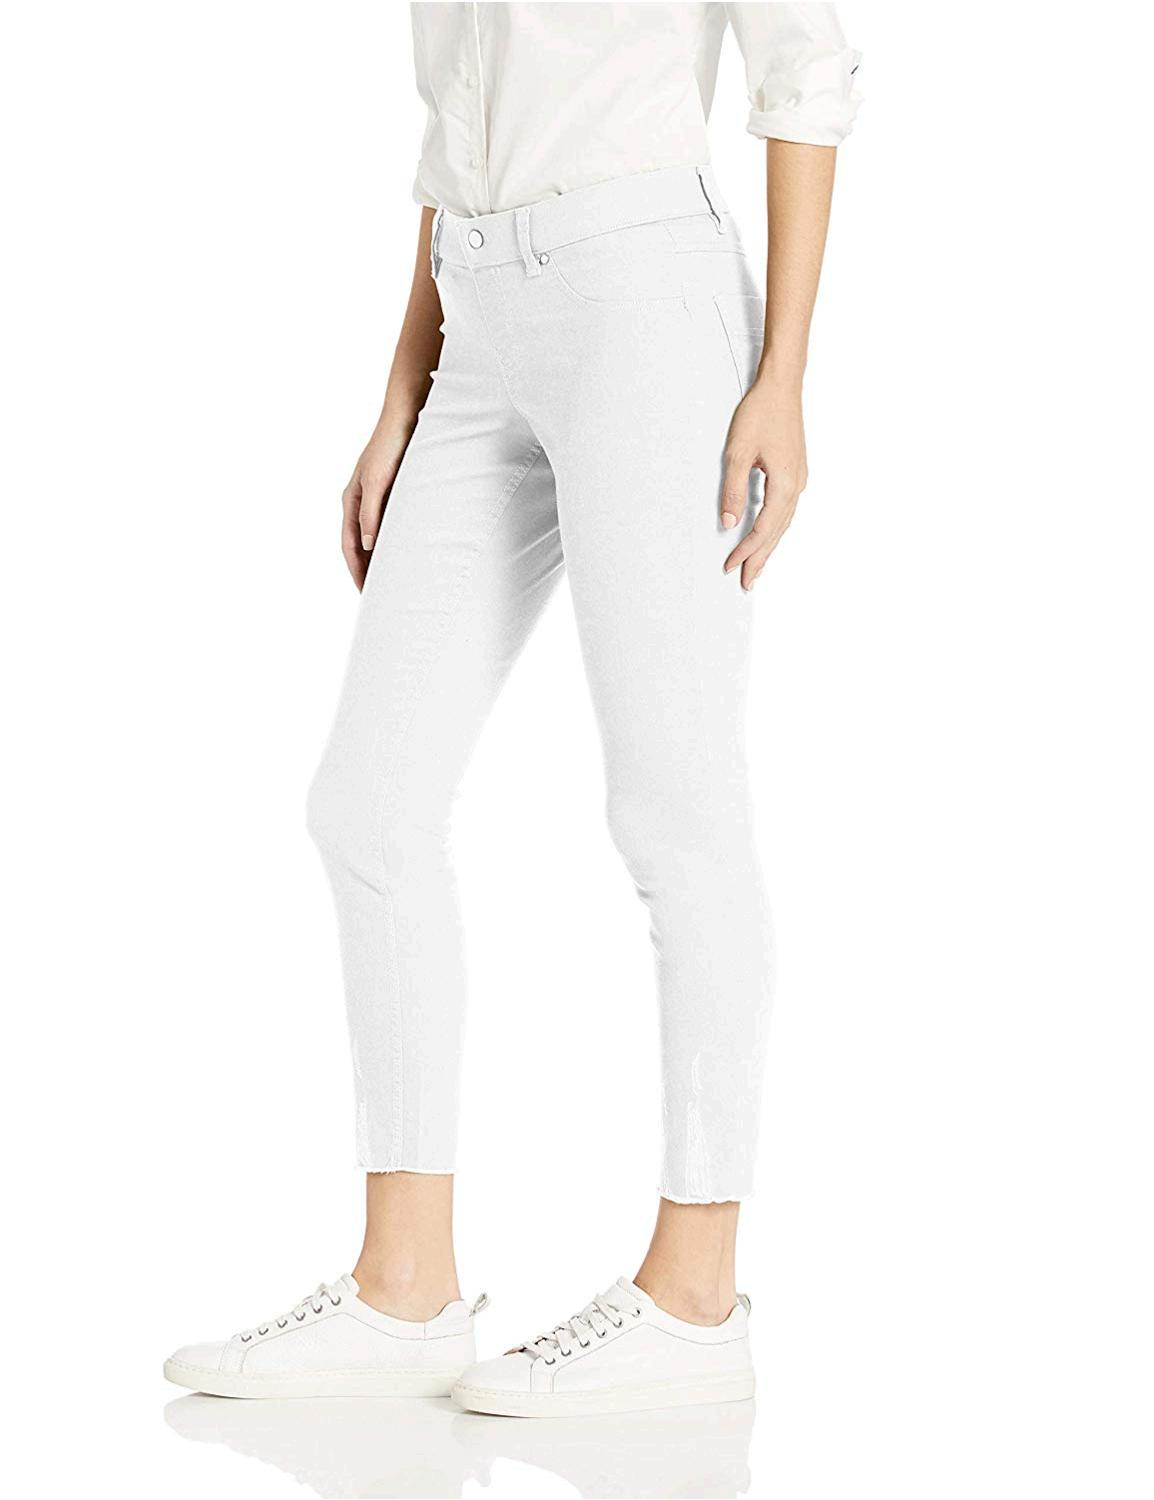 HUE Women's Ultra Soft Denim Jean Skimmer Leggings, Assorted,, White, Size  | eBay